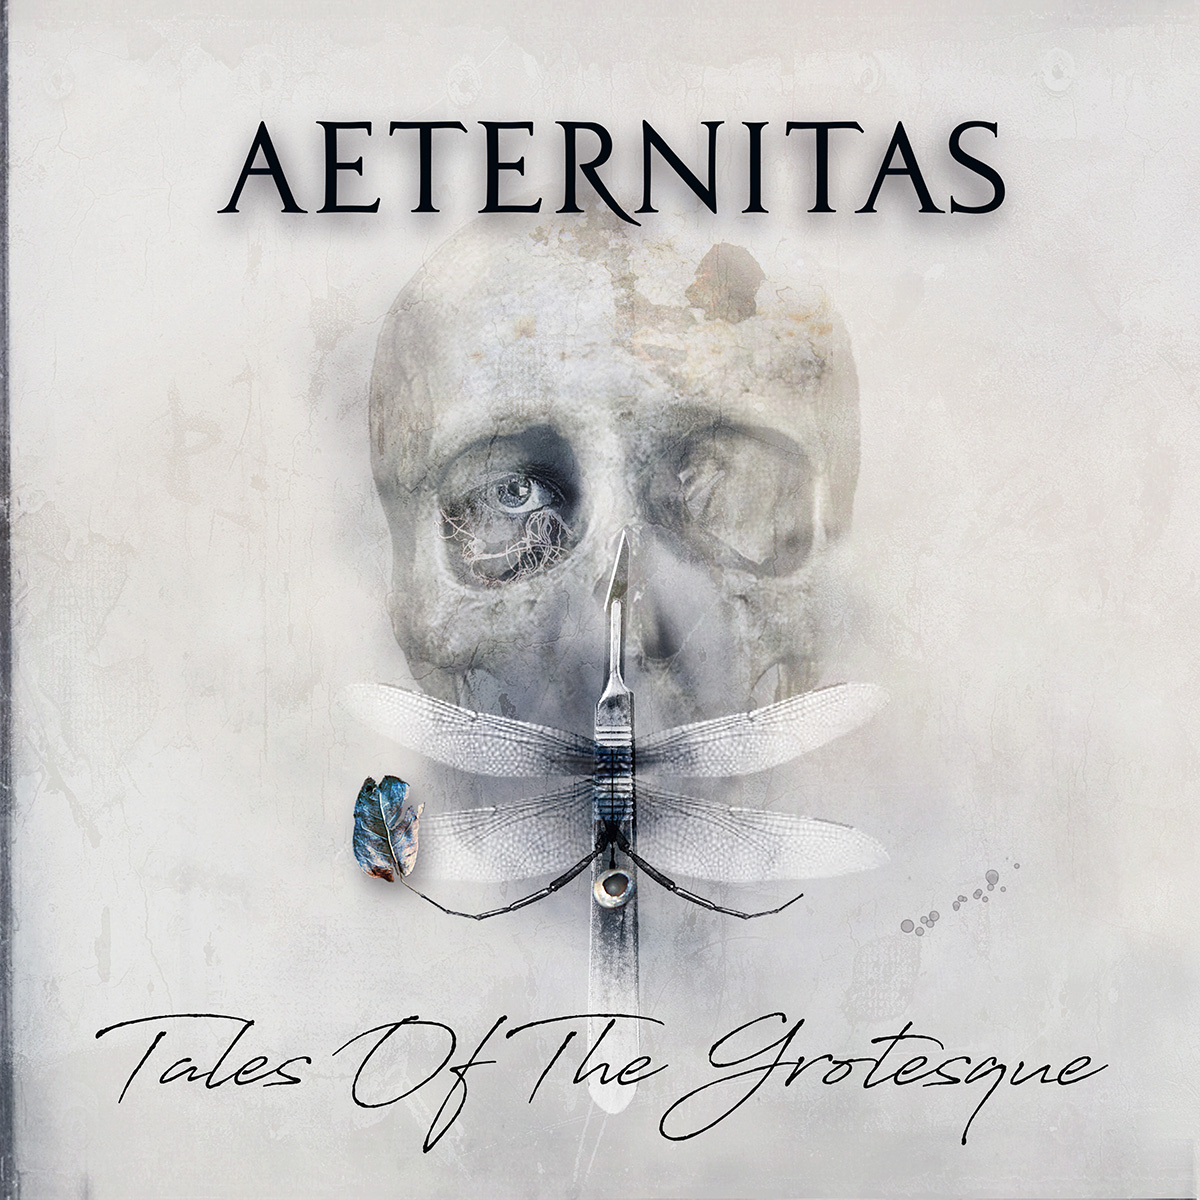 Aeternitas (Metal Gothique)